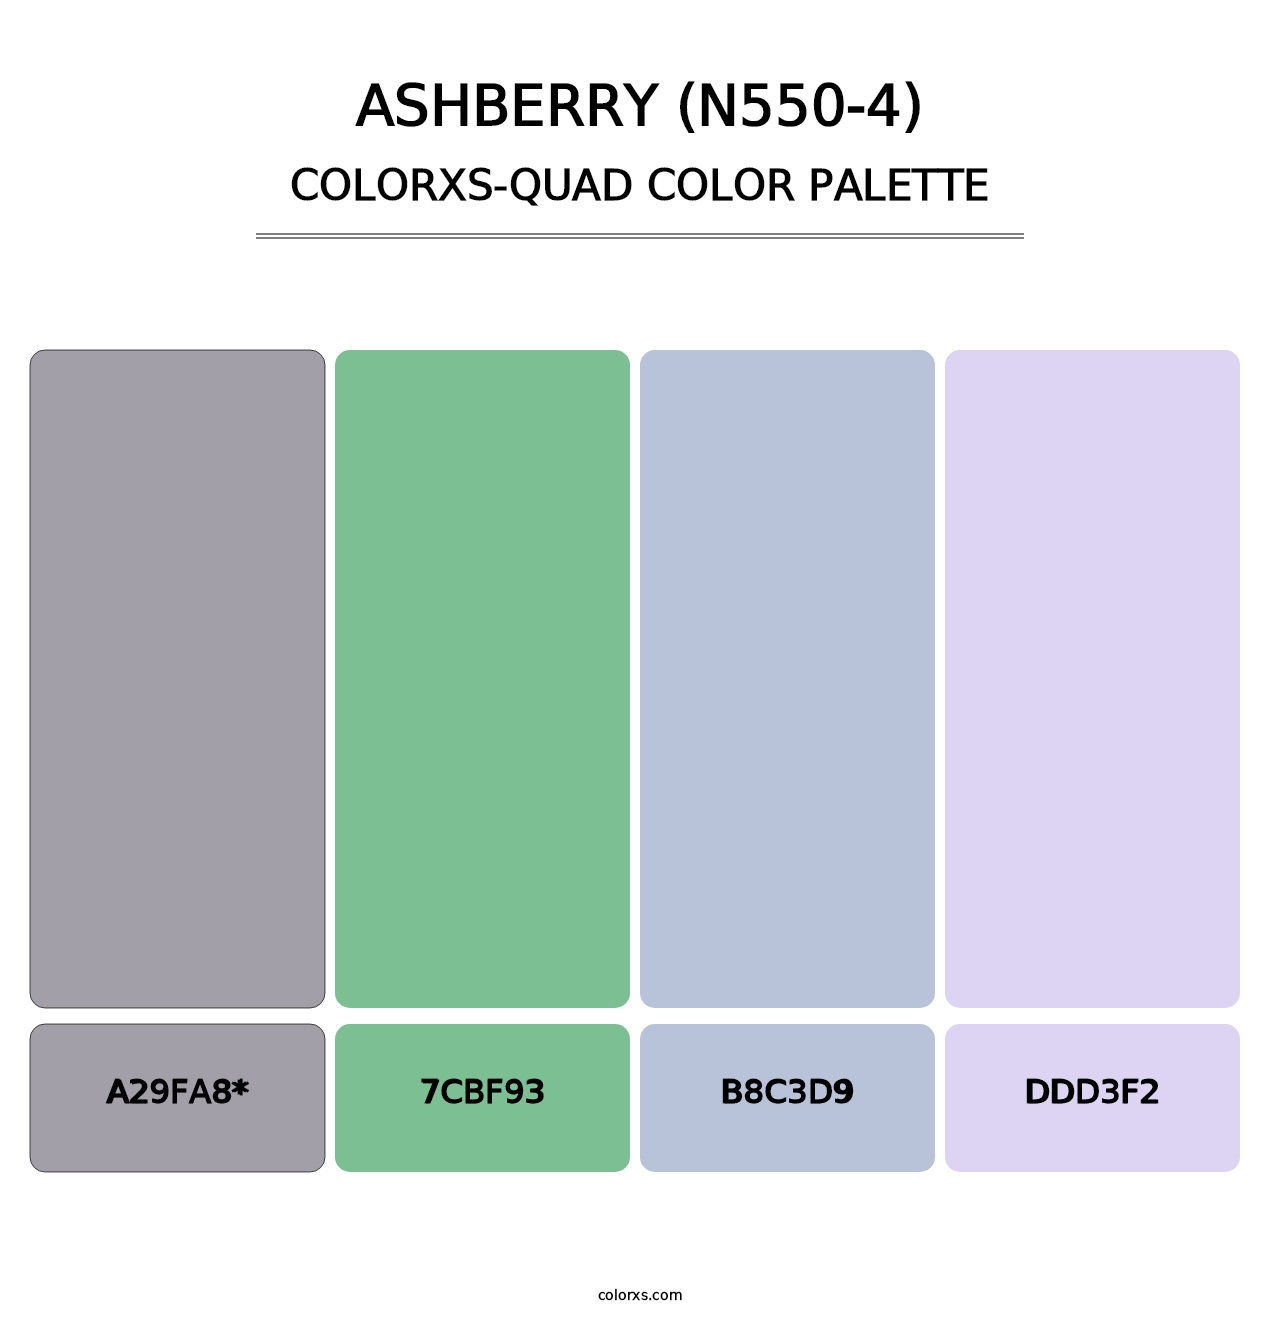 Ashberry (N550-4) - Colorxs Quad Palette